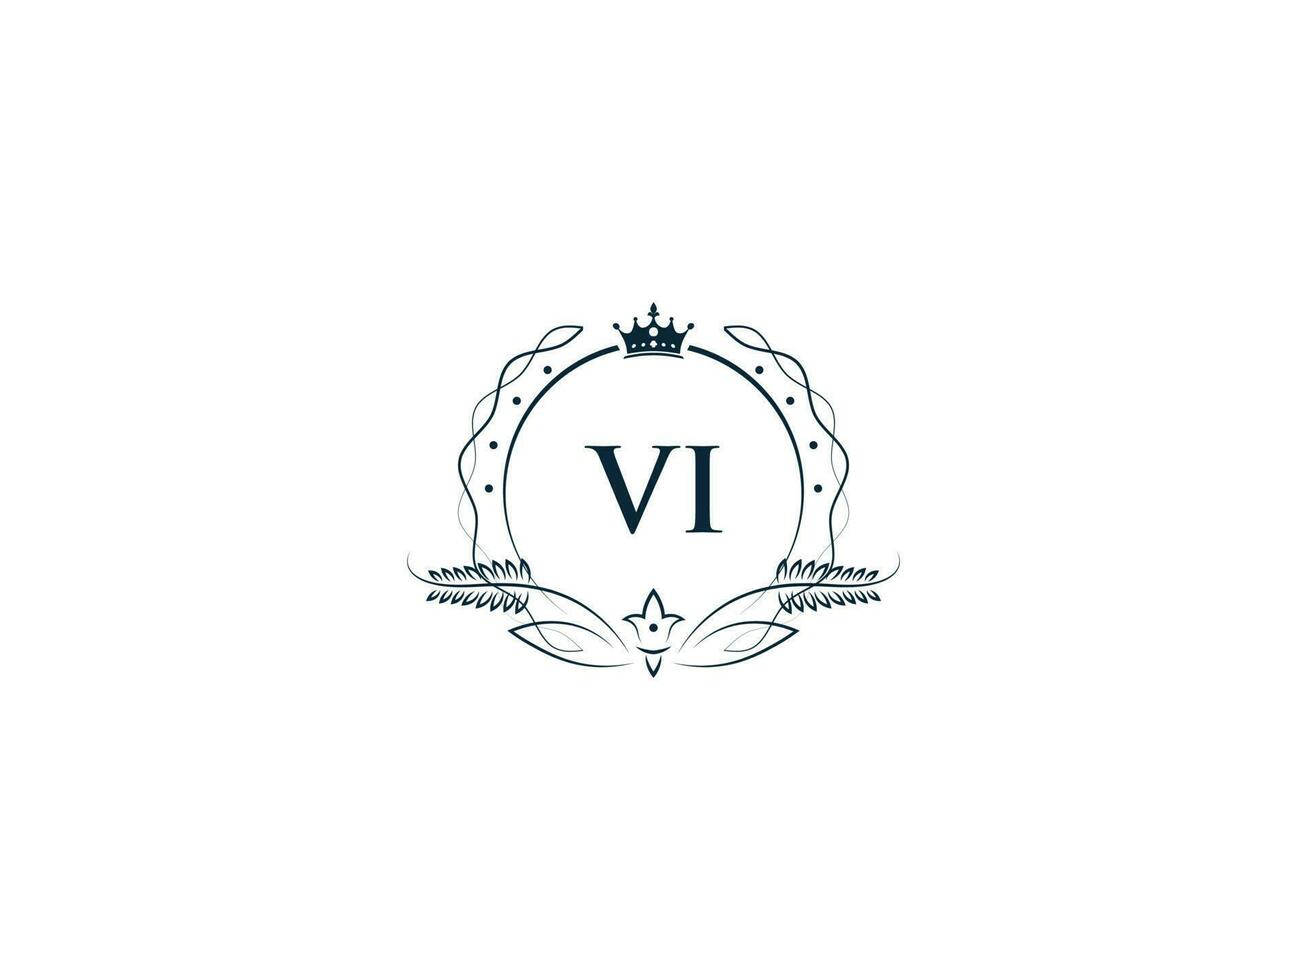 första vi logotyp brev design, minimal kunglig krona vi iv feminin logotyp symbol vektor